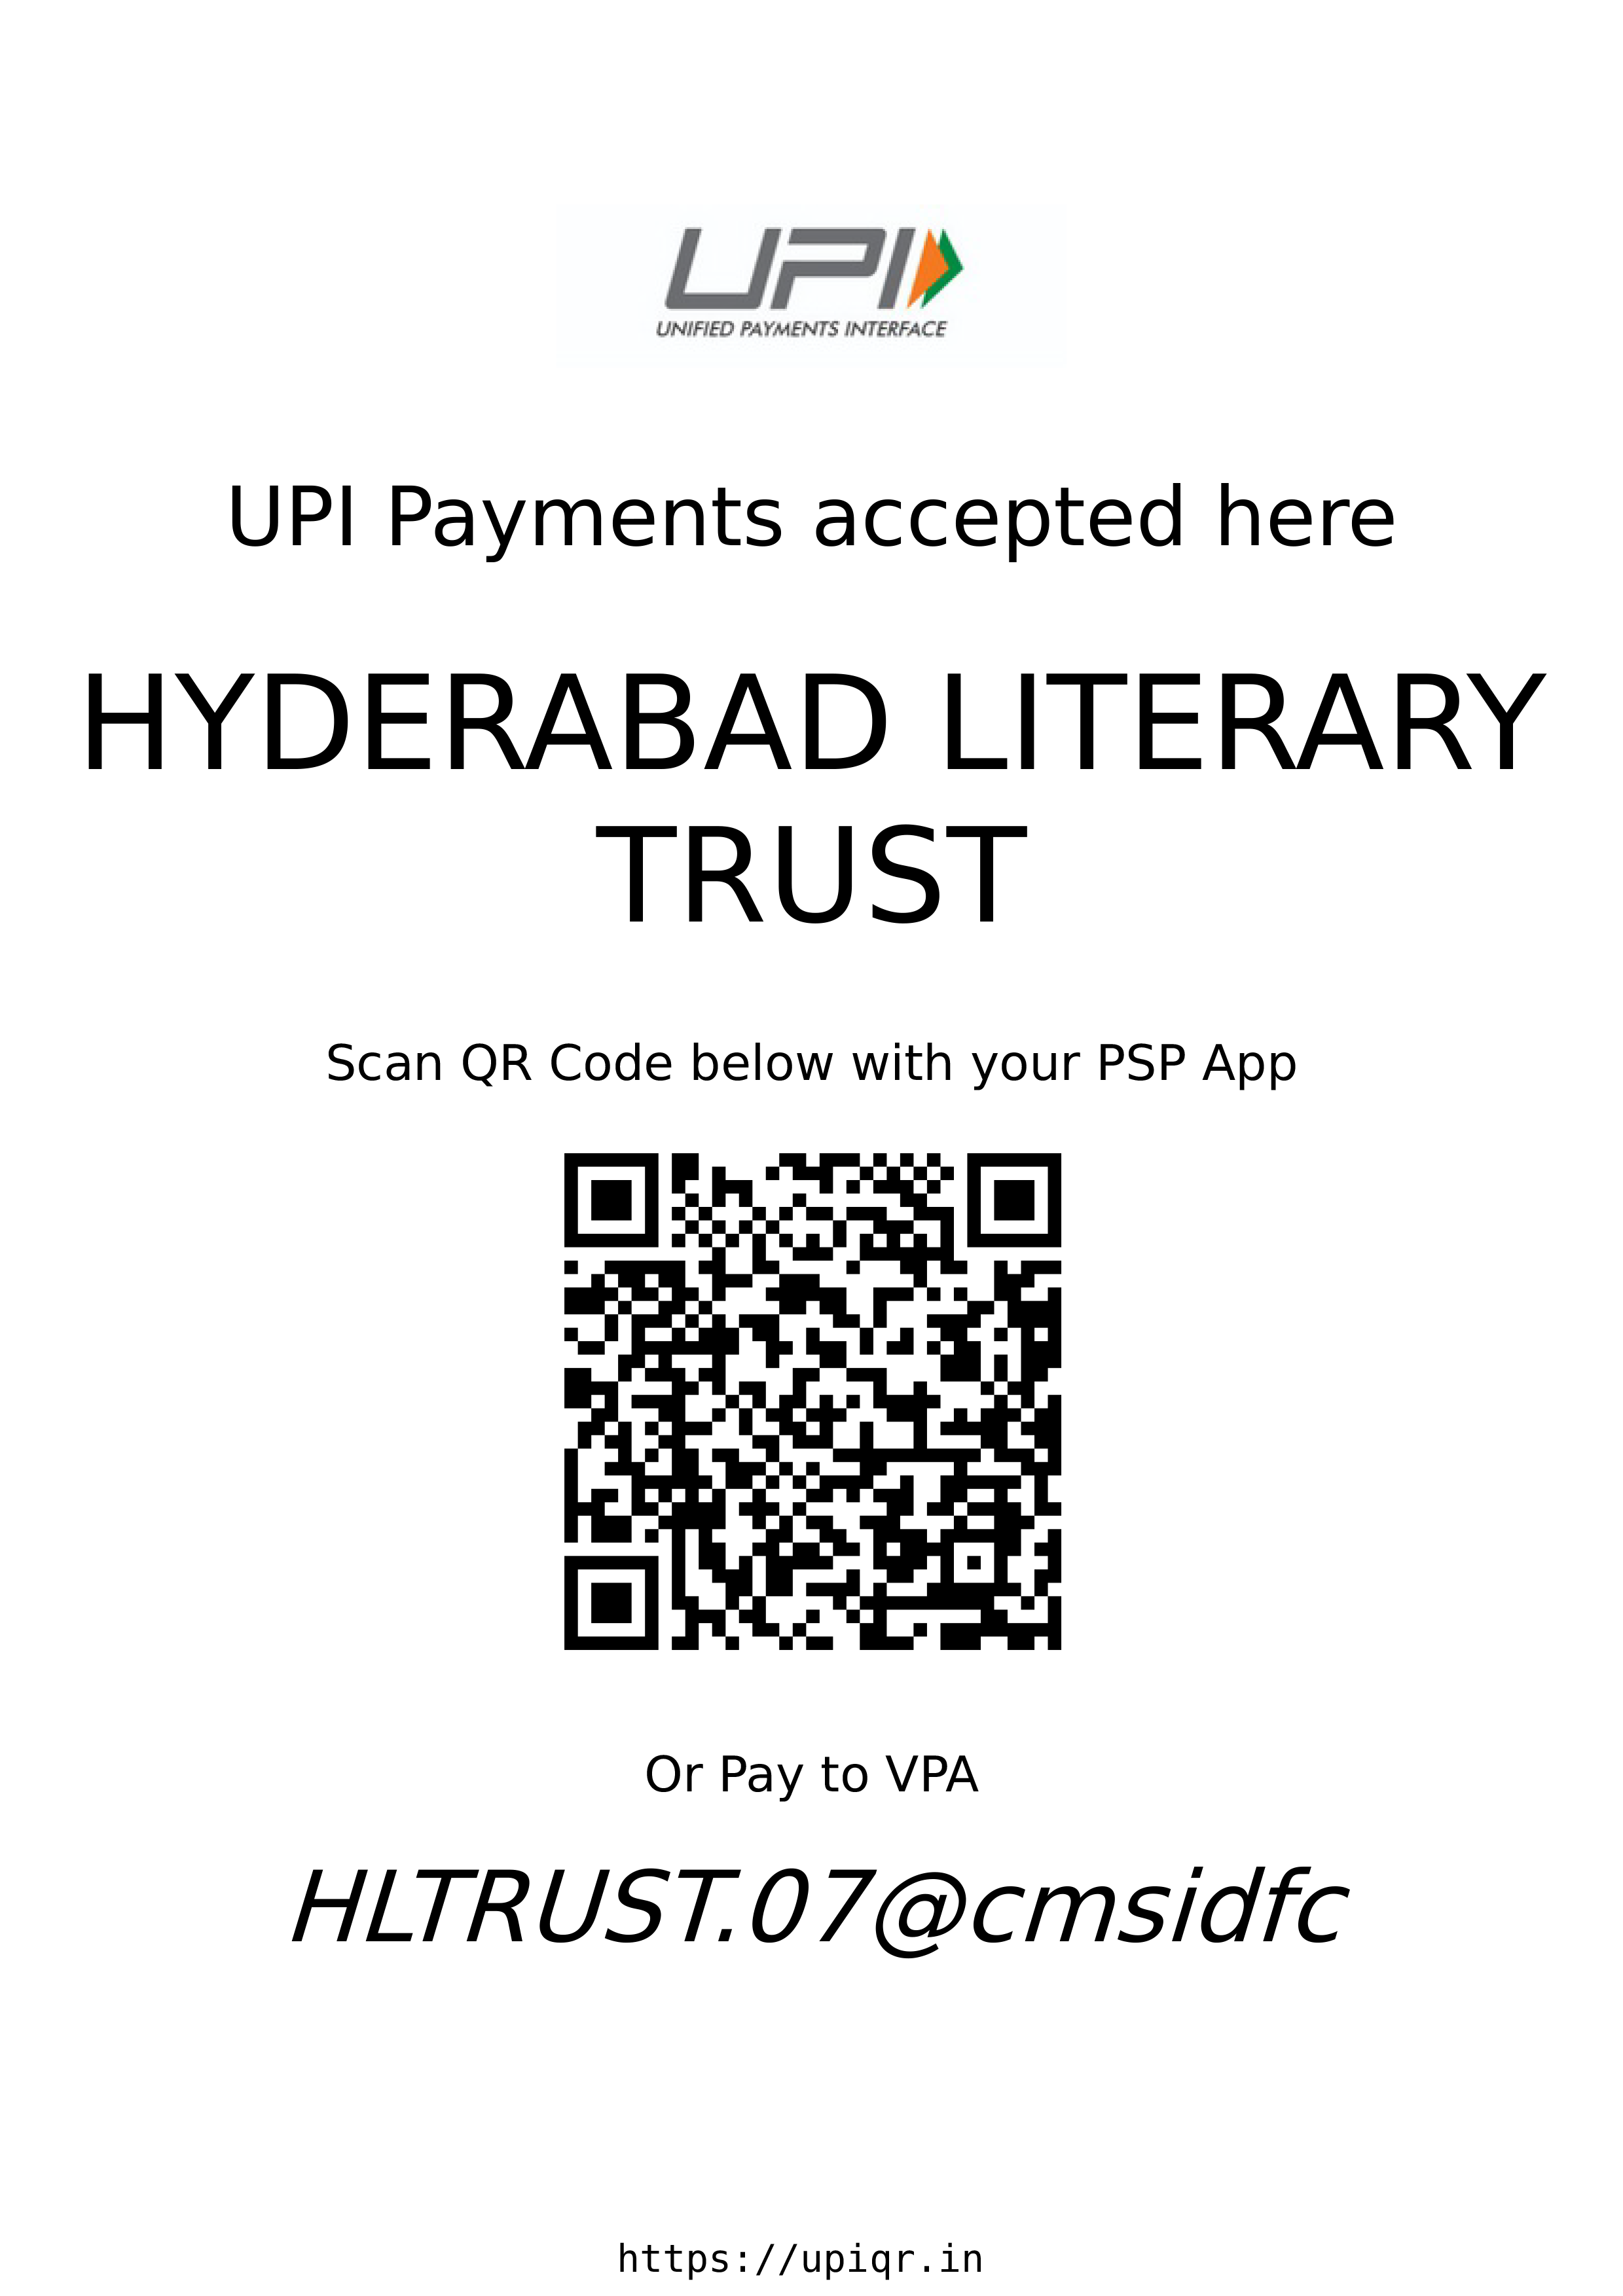 HLT - IDFC QR & UPI ID